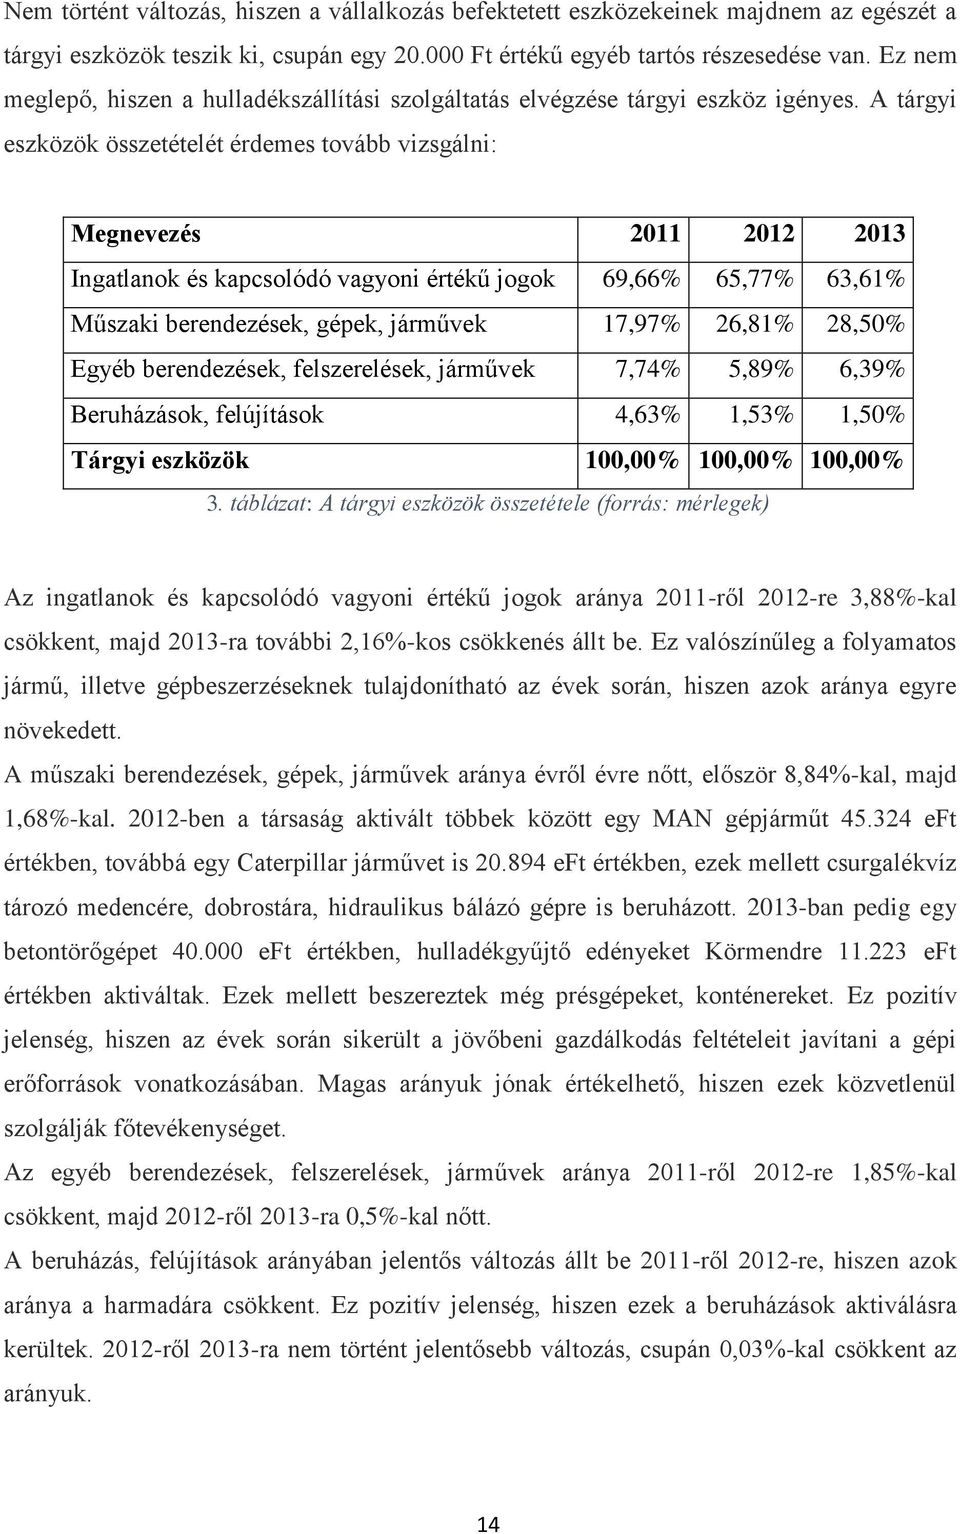 A tárgyi eszközök összetételét érdemes tovább vizsgálni: Megnevezés 2011 2012 2013 Ingatlanok és kapcsolódó vagyoni értékű jogok 69,66% 65,77% 63,61% Műszaki berendezések, gépek, járművek 17,97%